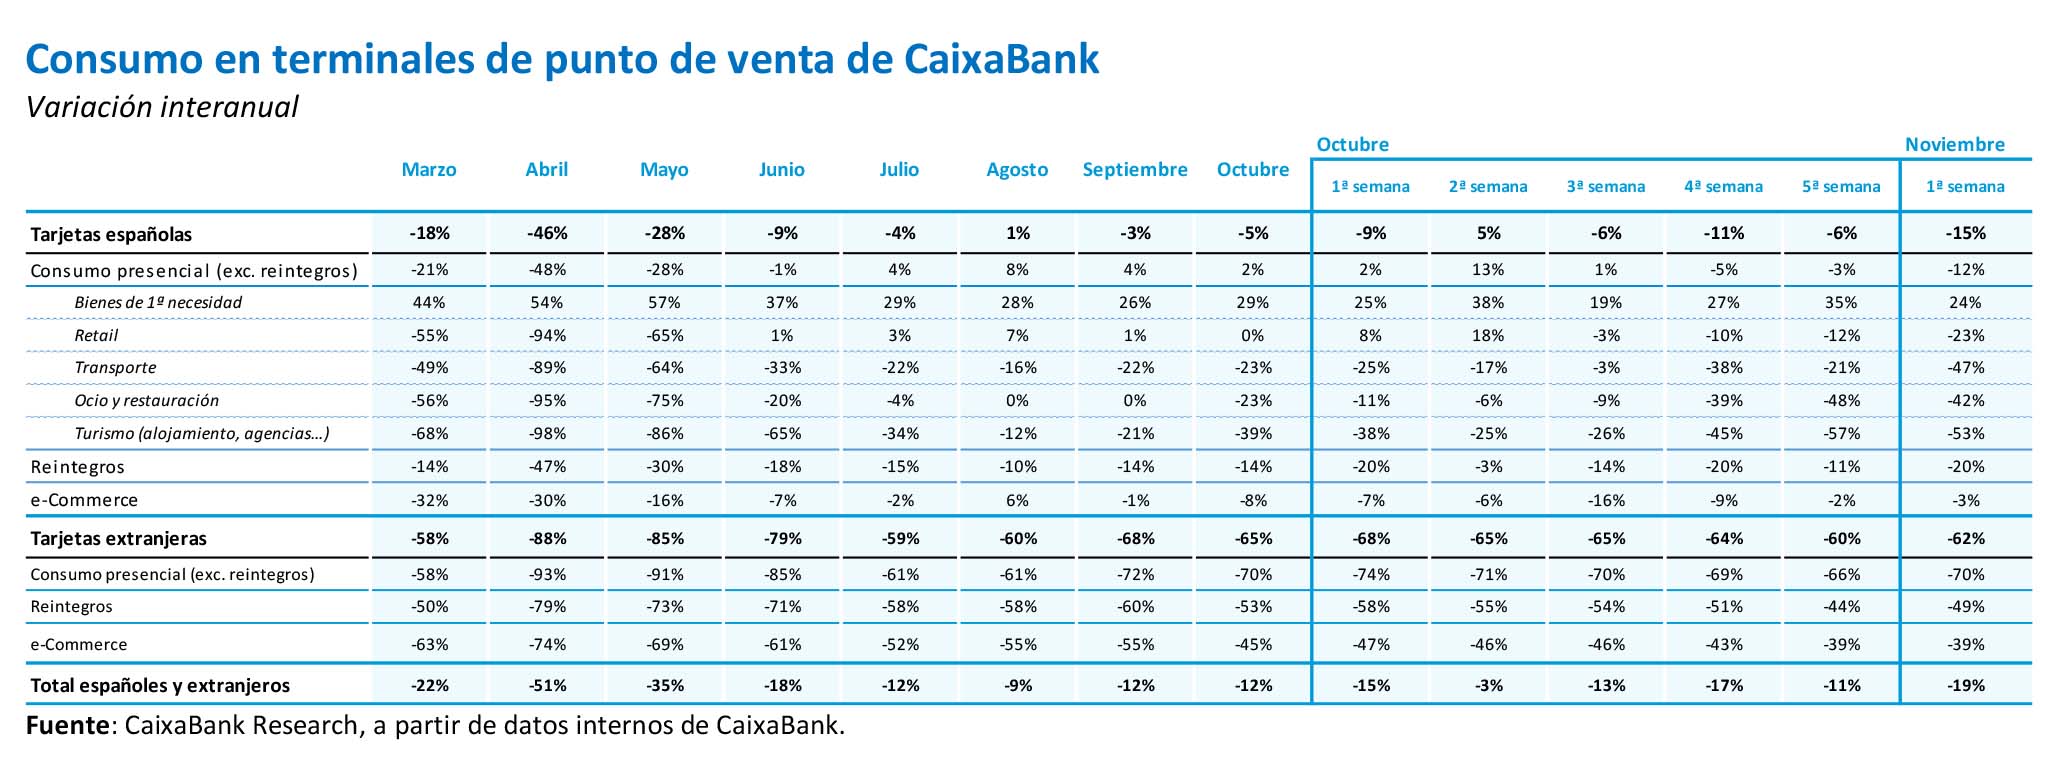 Consumo en terminales de punto de venta de CaixaBank